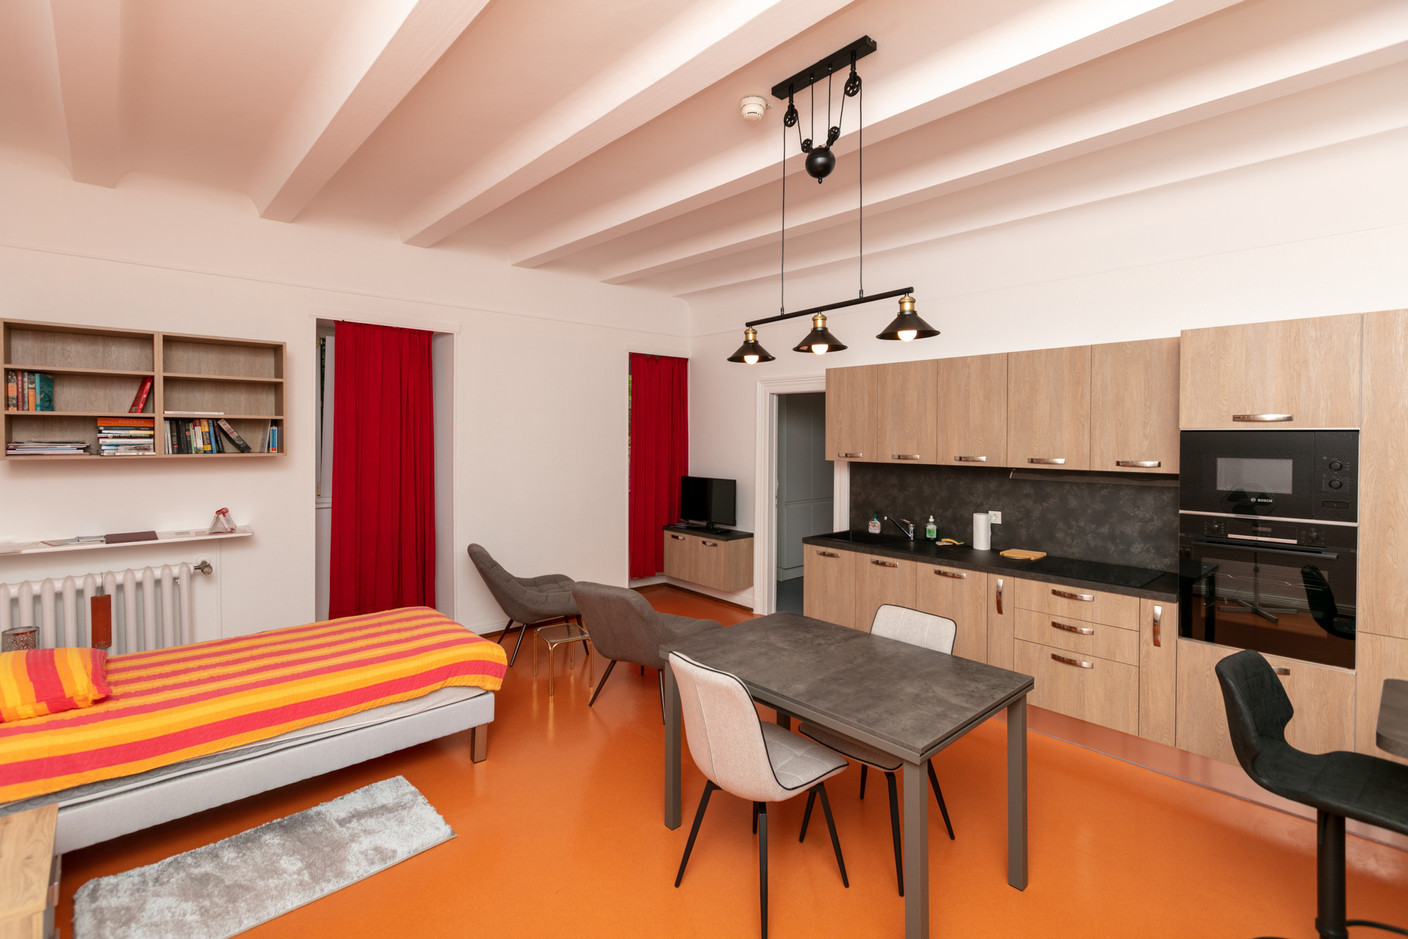 Un des appartements modernisés pour le logement du personnel. (Photo: Romain Gamba/Maison Moderne)